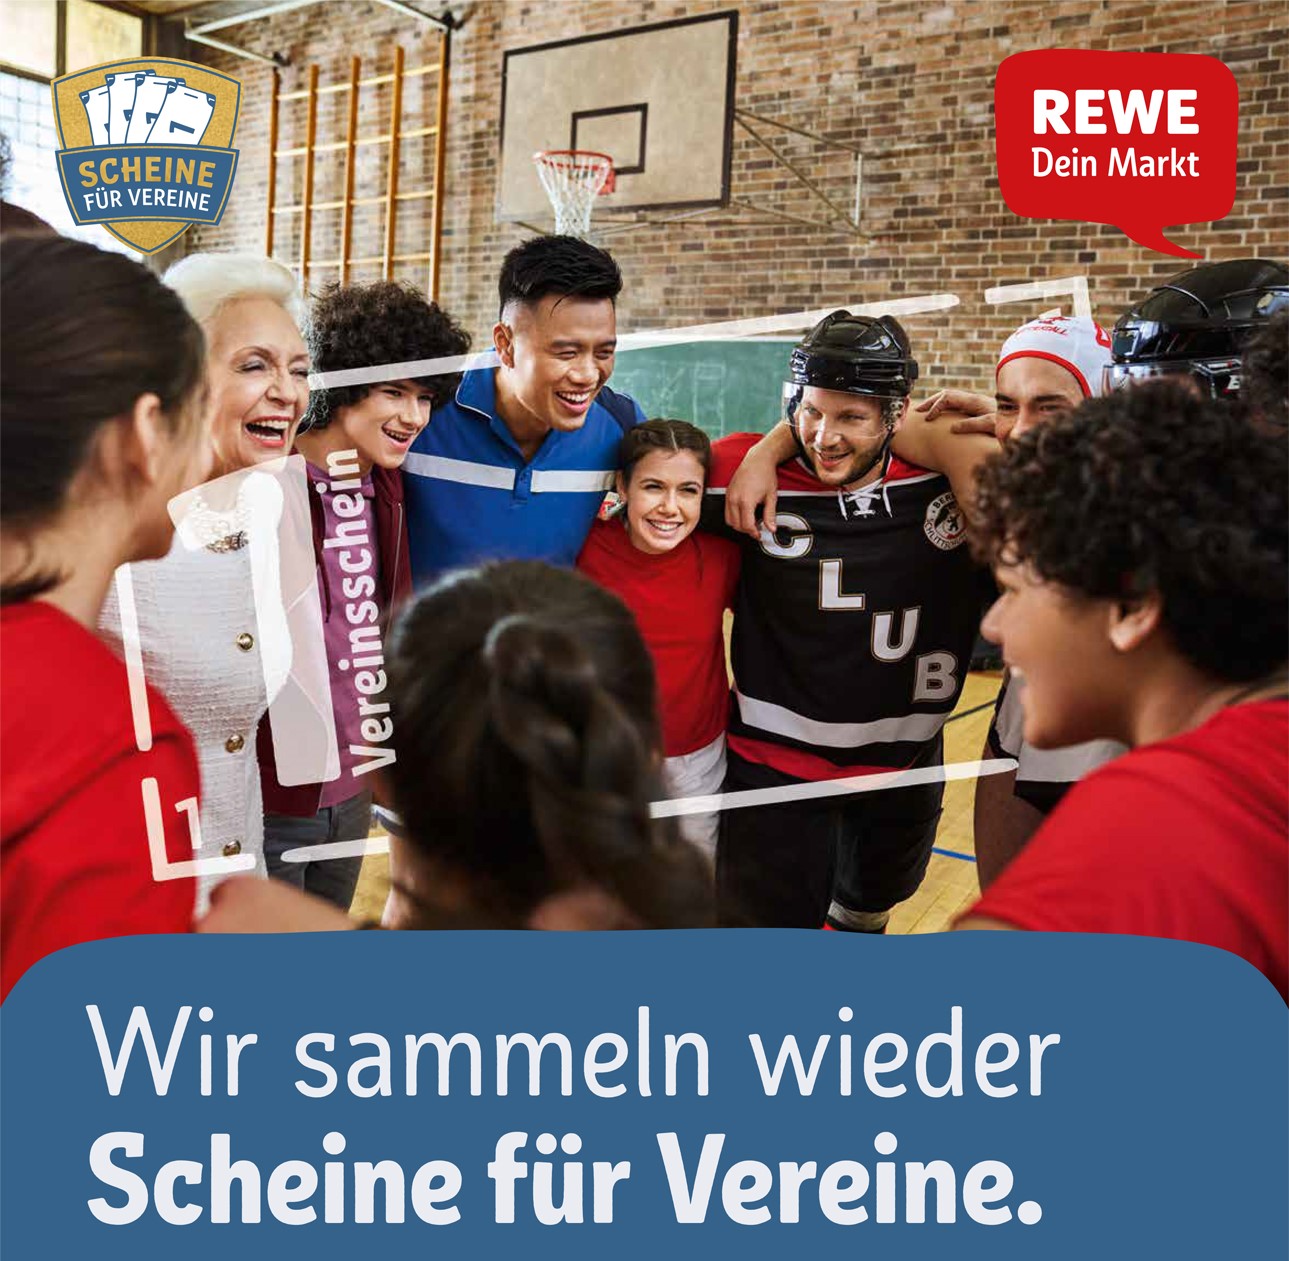 REWE Scheine fuer Vereine Aktionsposter Web